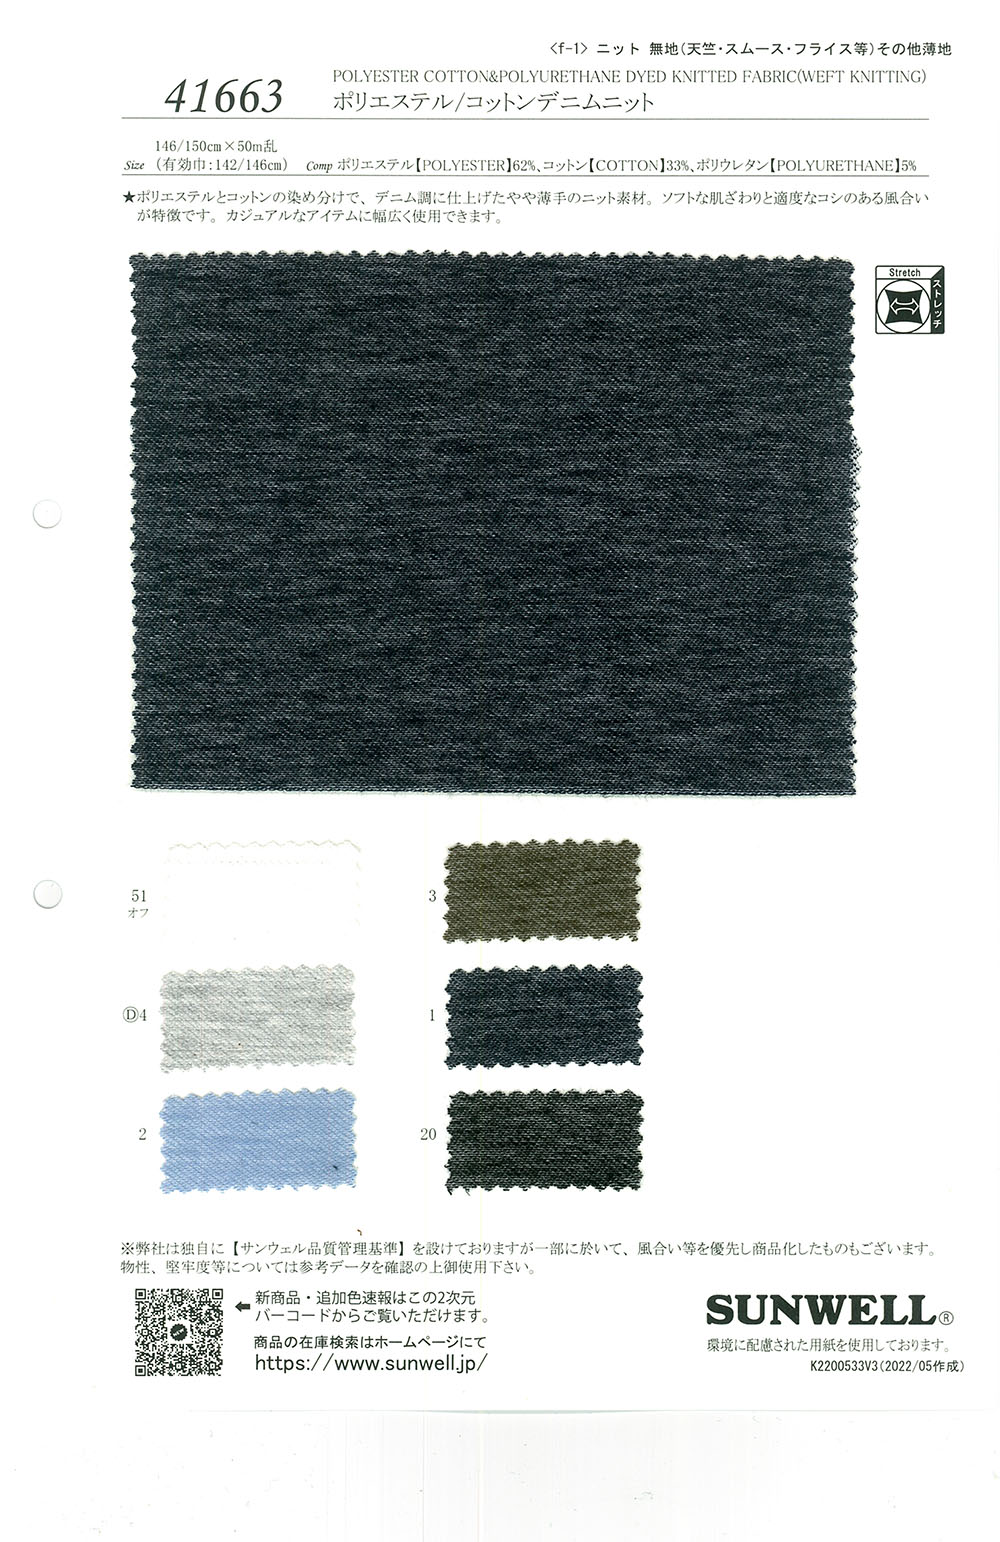 41663 Polyester / Cotton Vải Bò Vải Dệt Kim SUNWELL ( Giếng Trời )